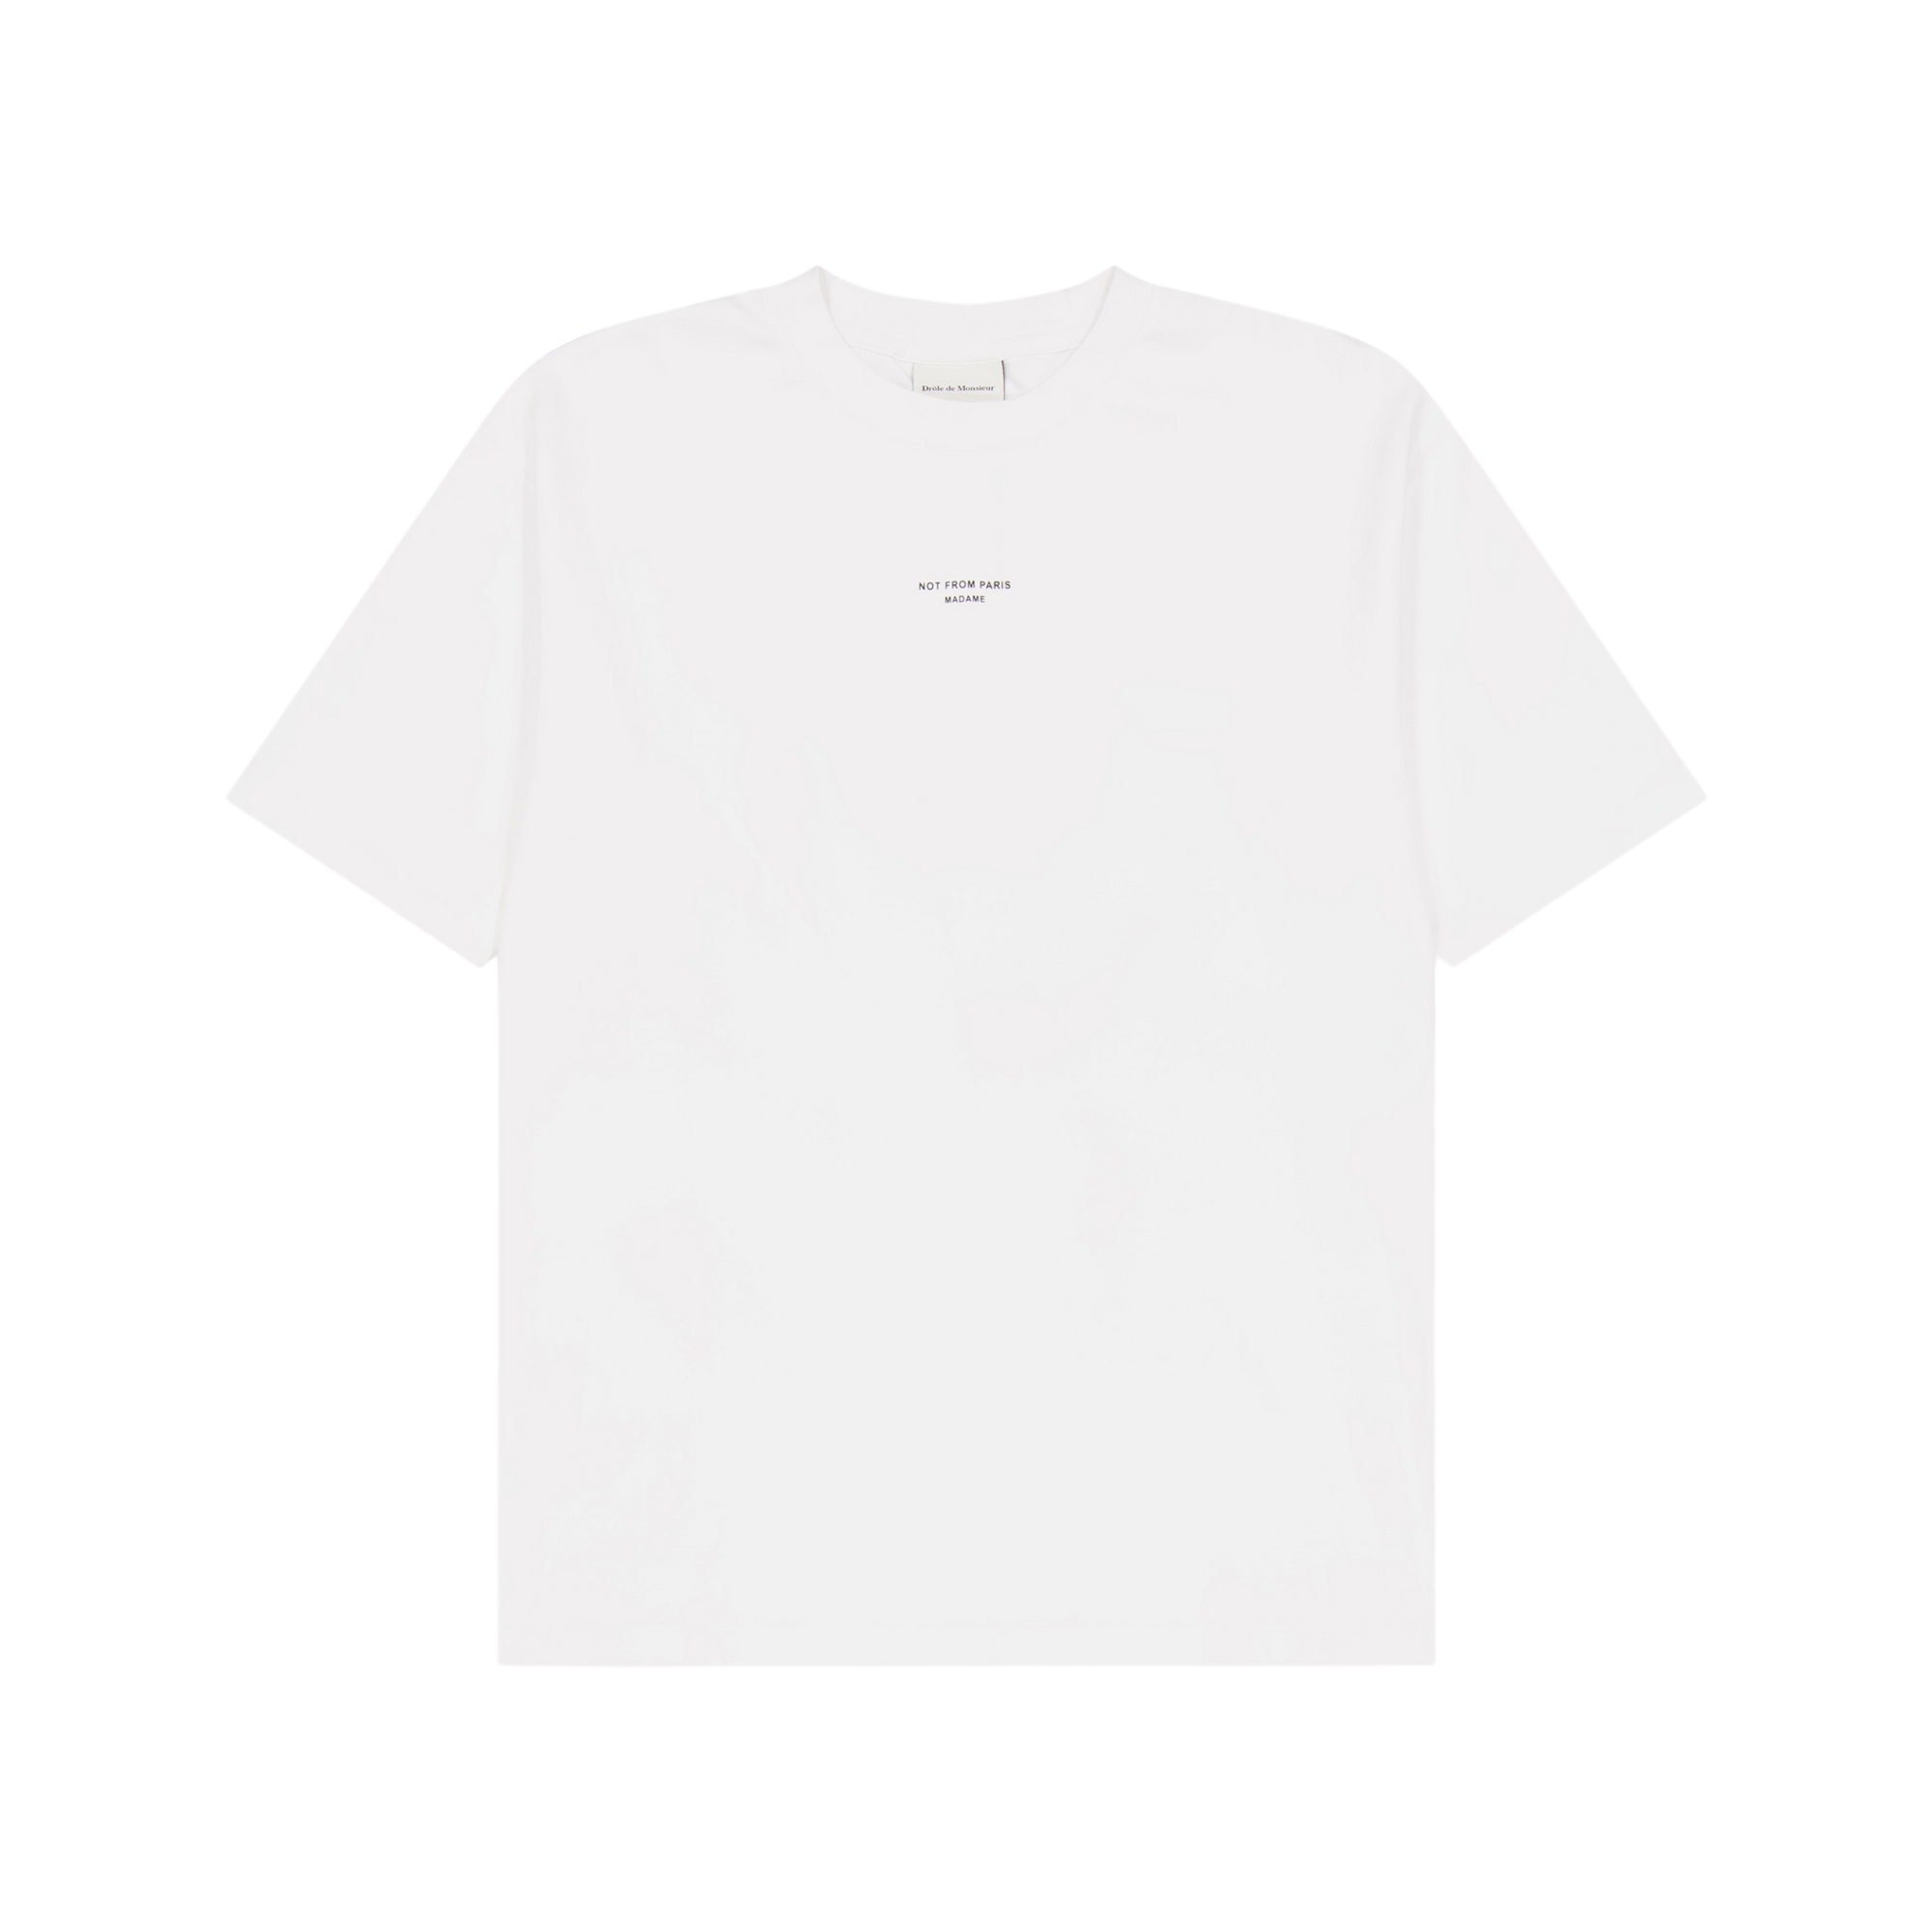 Le Tshirt Classique Nfpm White